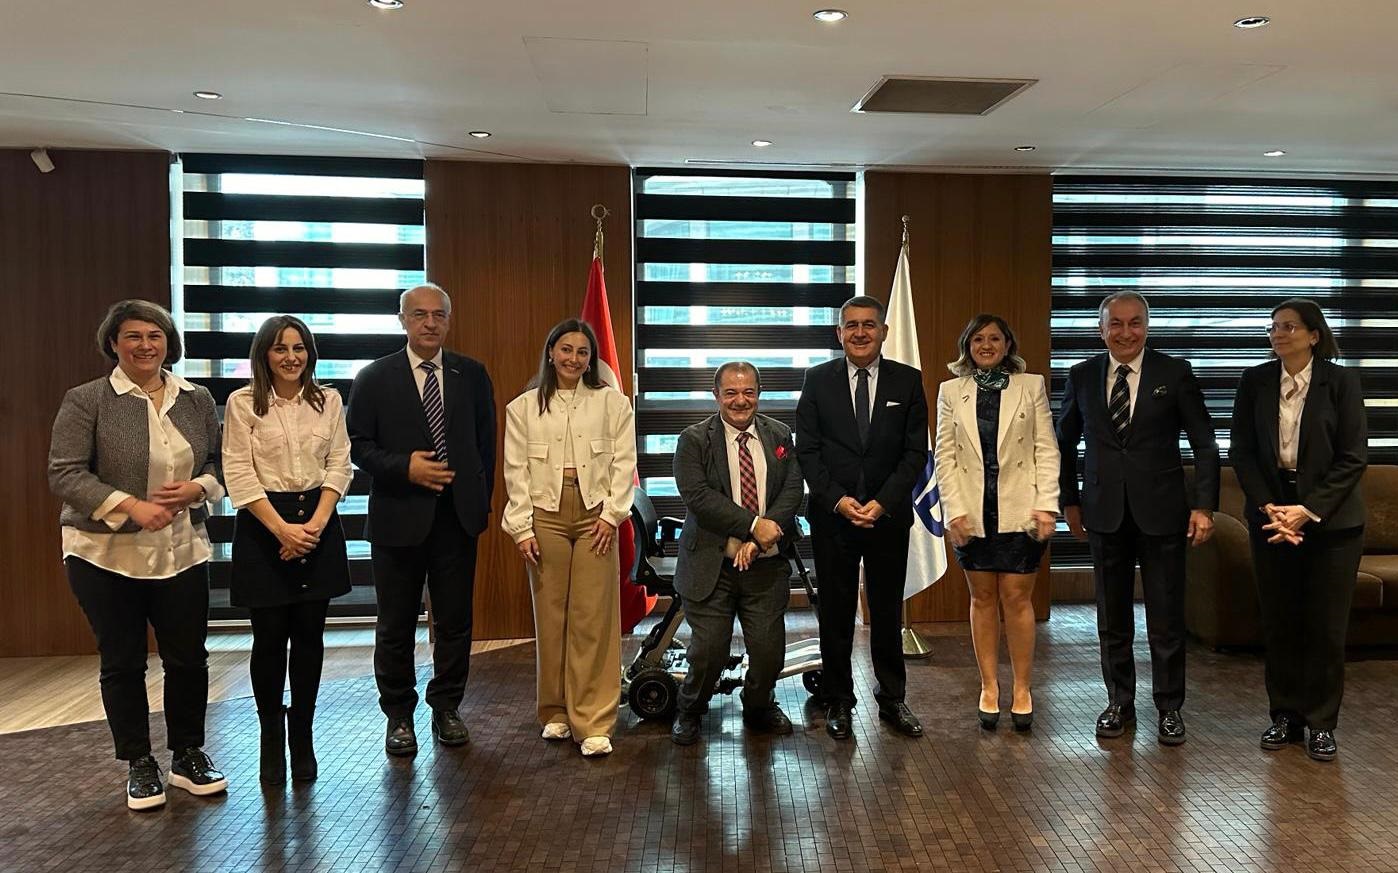 Dışyönder Yönetim Kurulu Üyelerimiz, Tüsiad Başkanı Sn. Orhan Turan’a ziyarette bulundu.